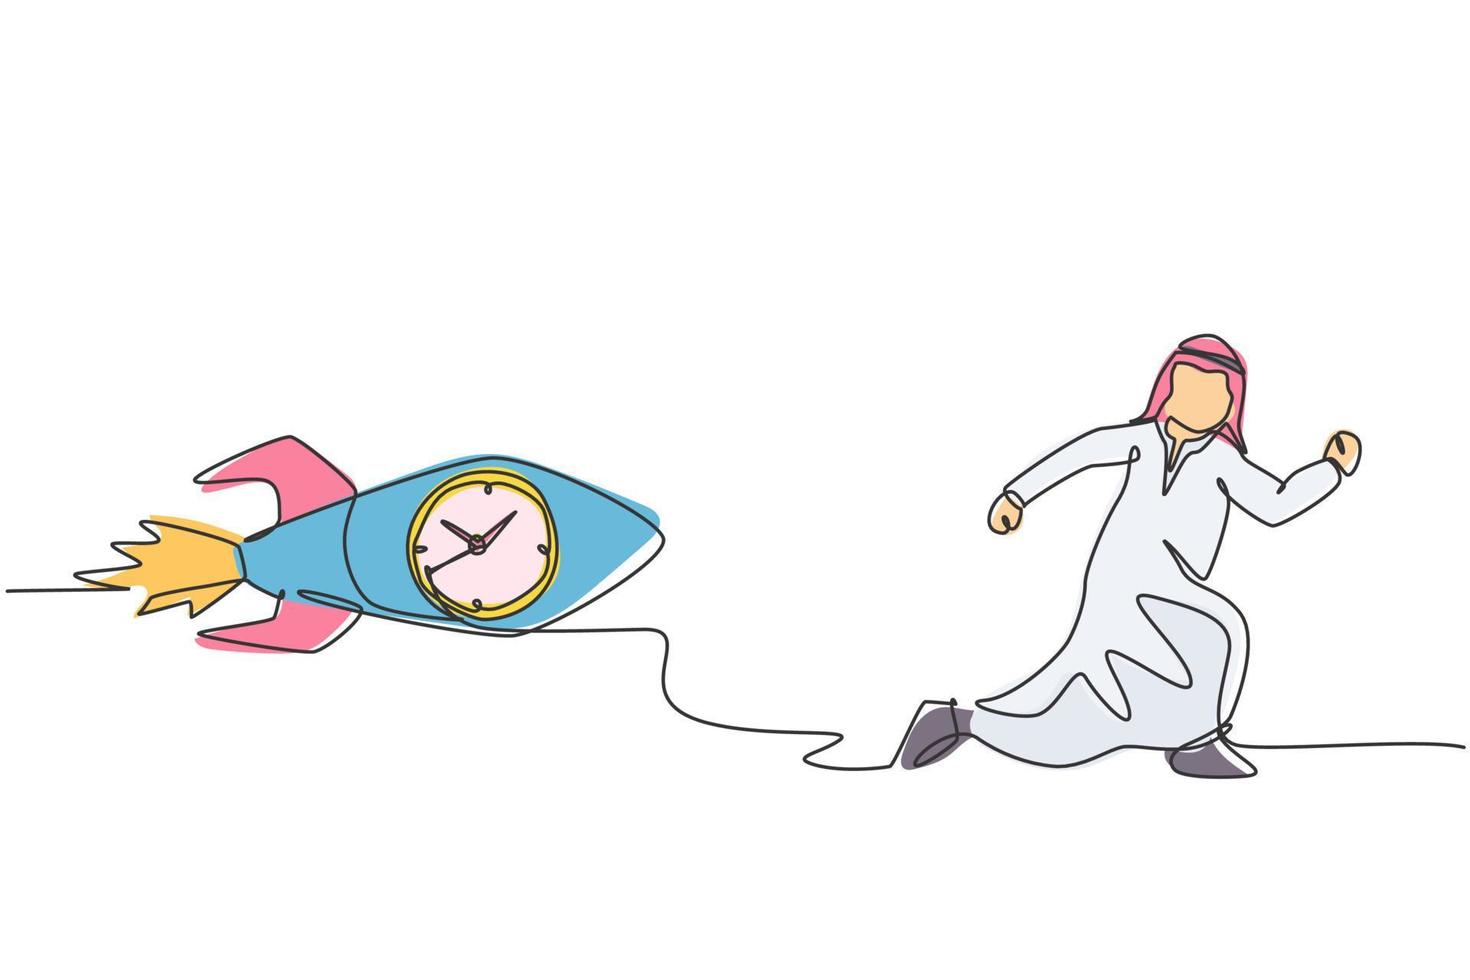 contínua uma linha desenho jovem trabalhador árabe perseguido por um foguete voador com relógio dentro. conceito minimalista de negócios de gerenciamento de horas de ponta. ilustração gráfica do vetor do desenho do desenho de linha única.